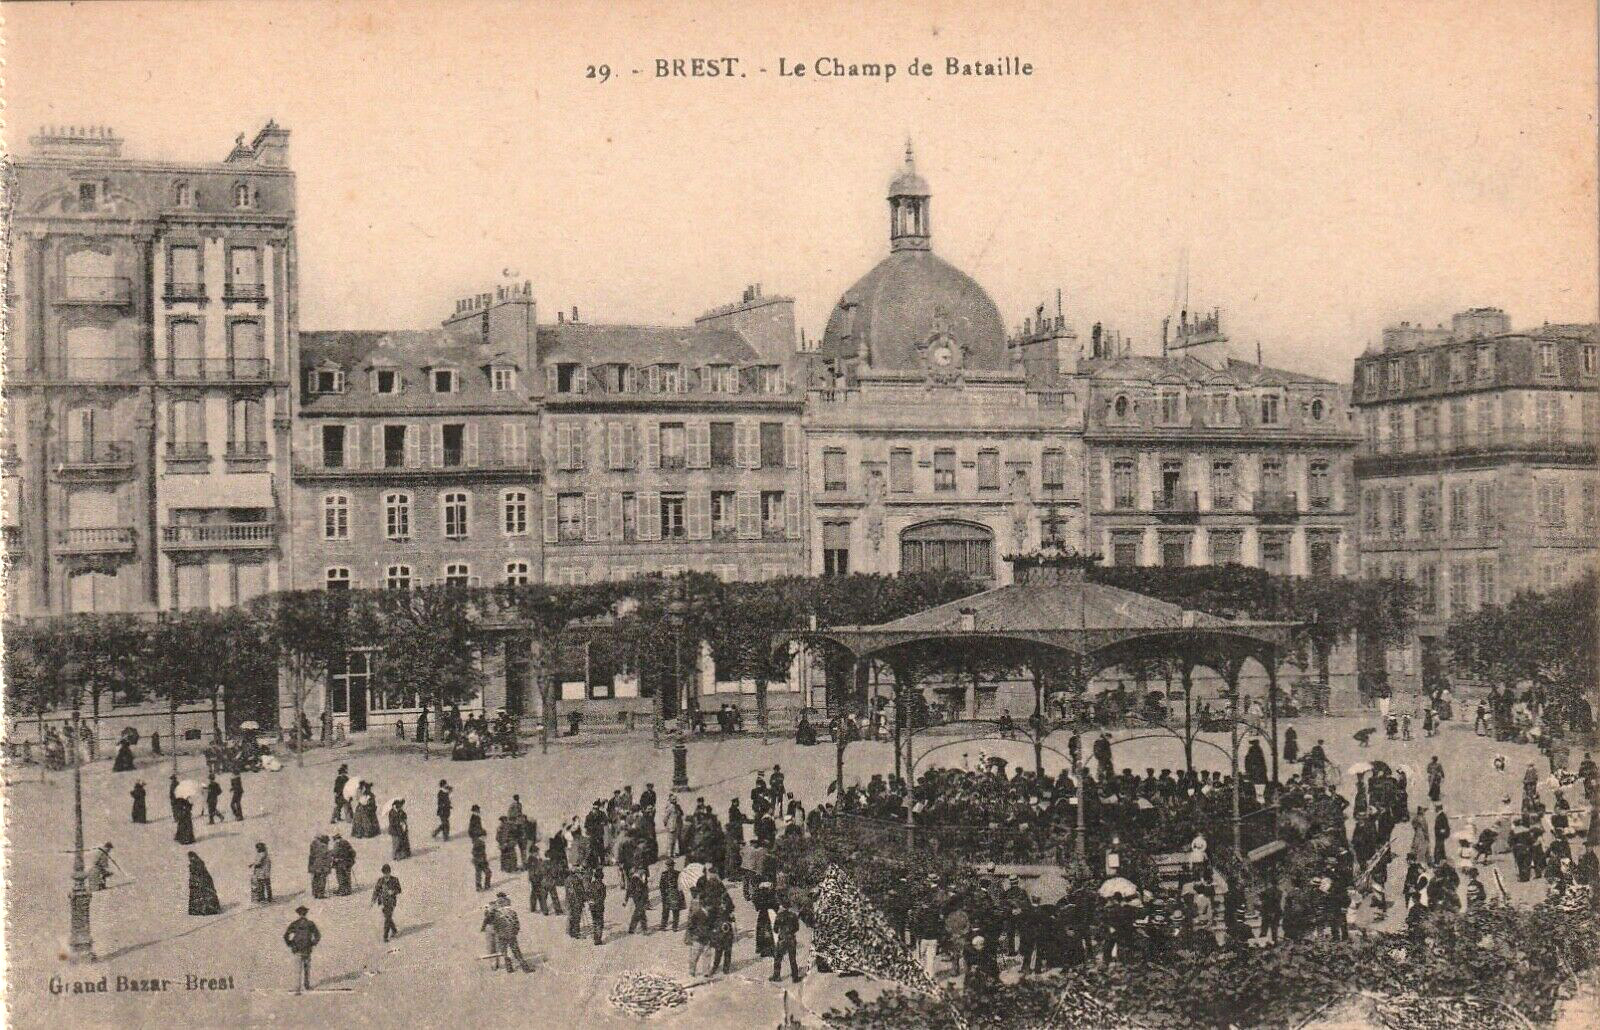 LE CHAMP DE BATAILLE GRAND BAZAR POSTCARD BREST FRANCE Antique 1910s